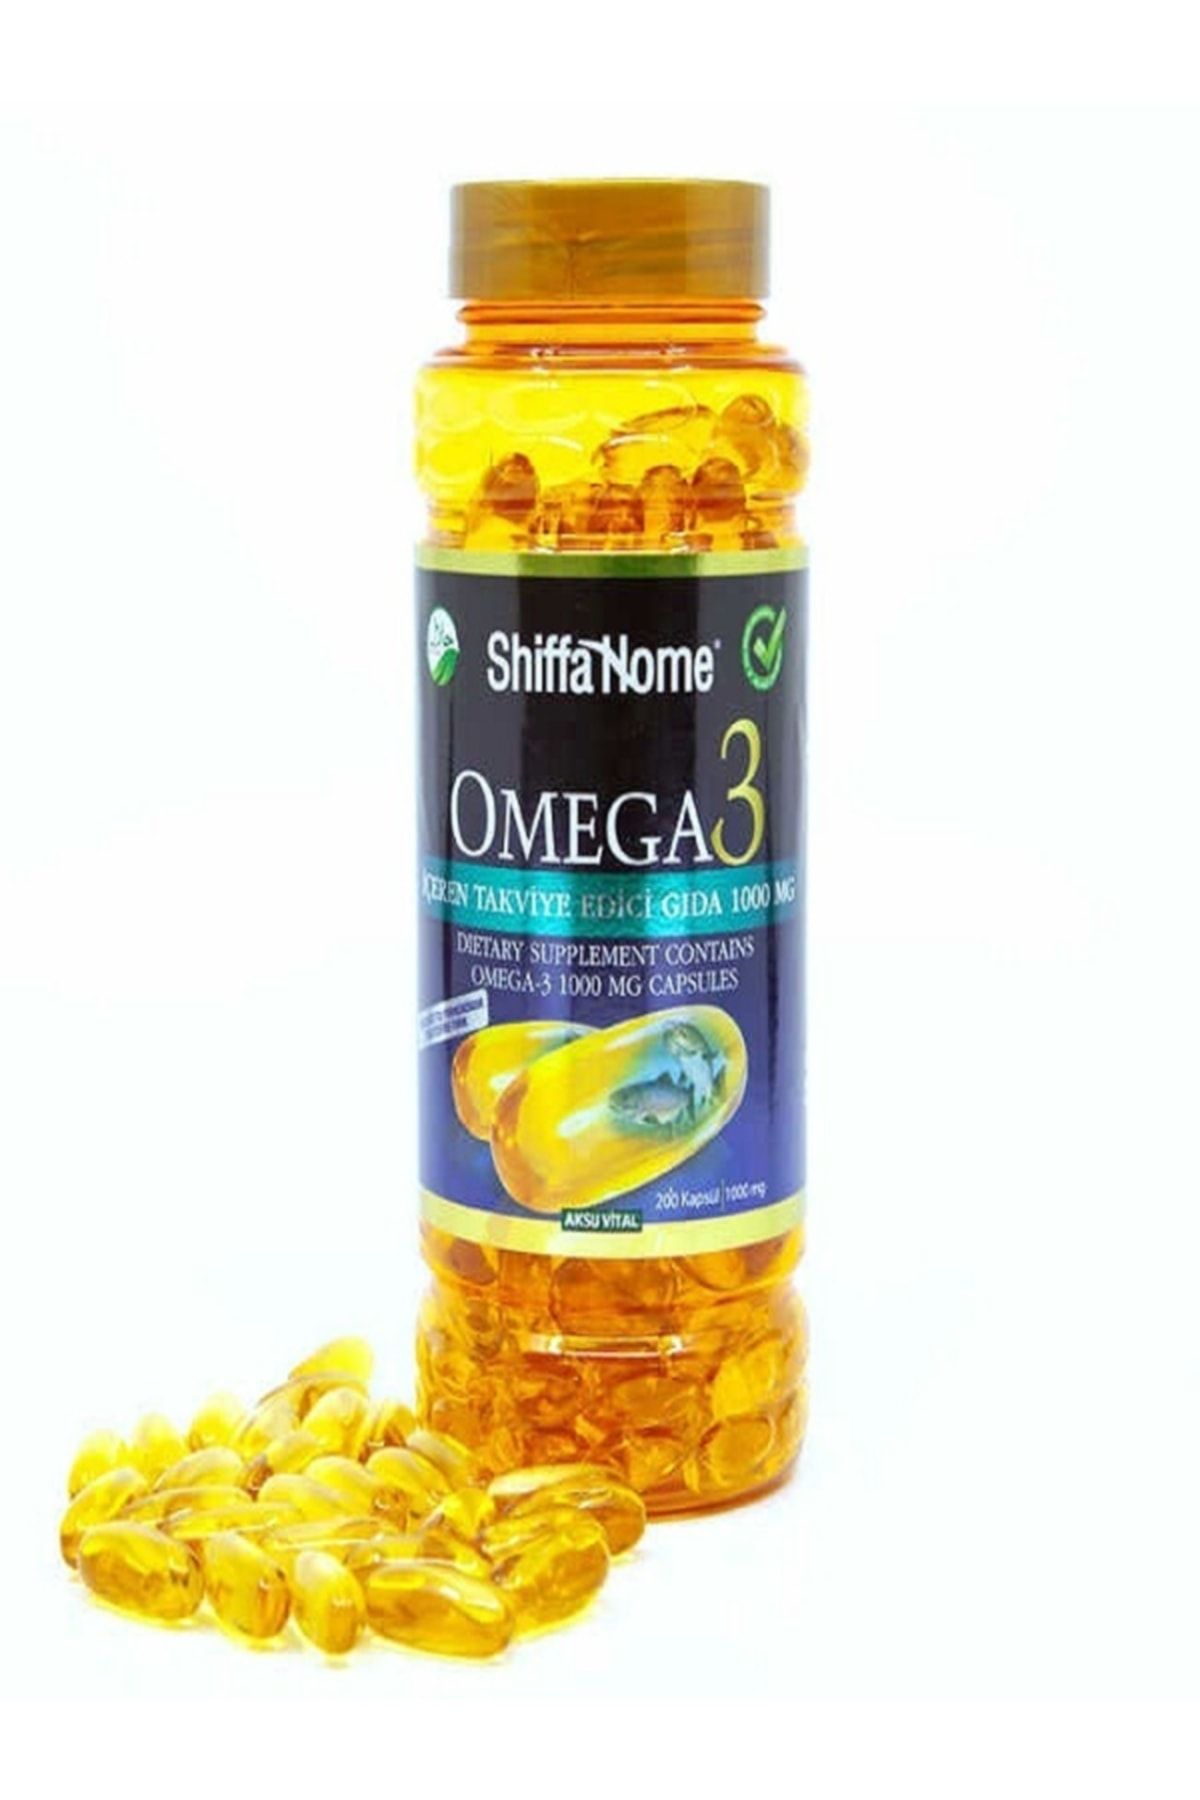 Shiffa Home Omega-3 Balık Yağı Epa Dha 1000 Mg 200 Softjel Aksuvital